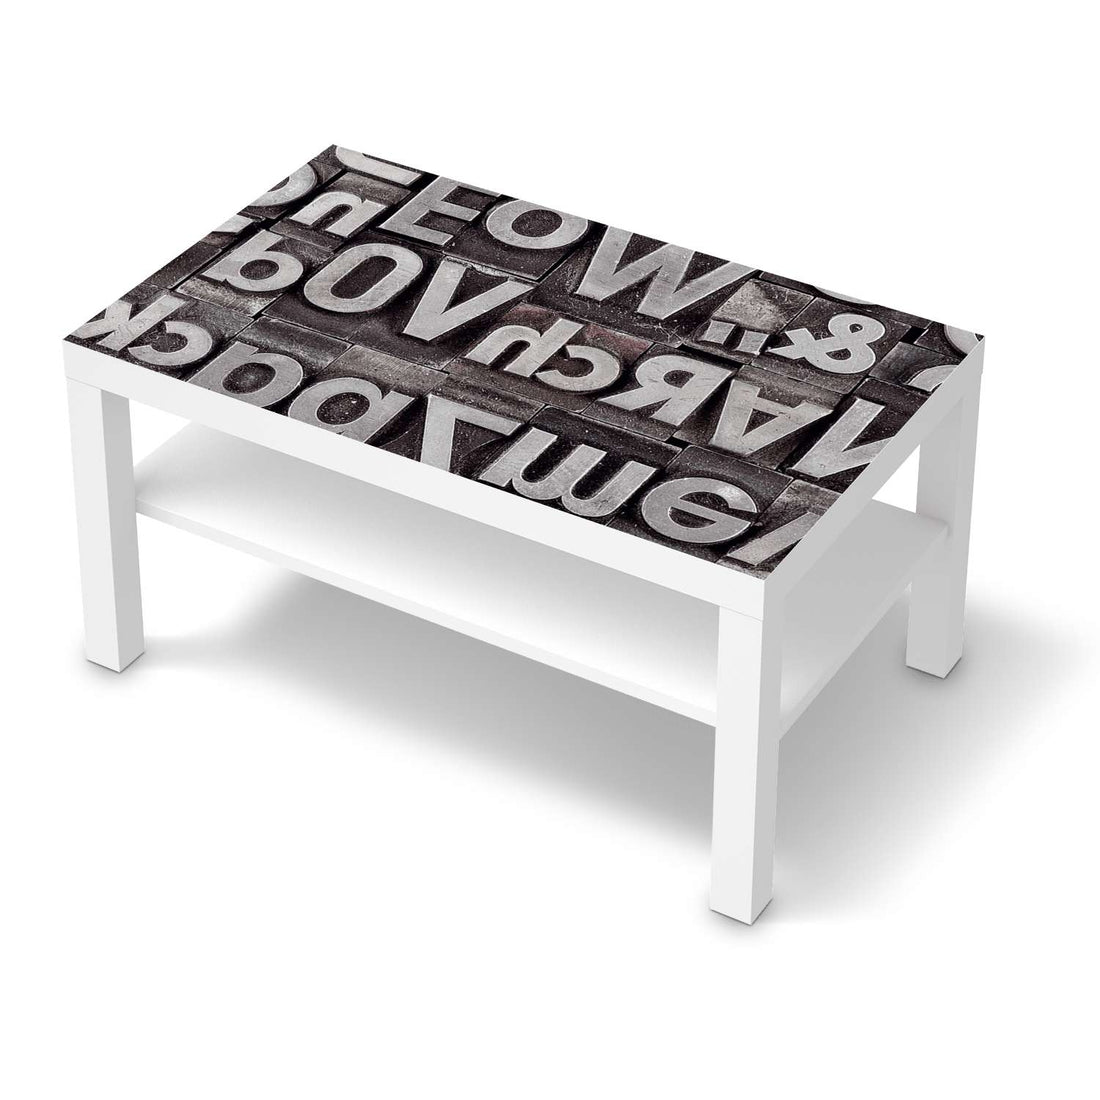 Möbelfolie Alphabet - IKEA Lack Tisch 90x55 cm - weiss